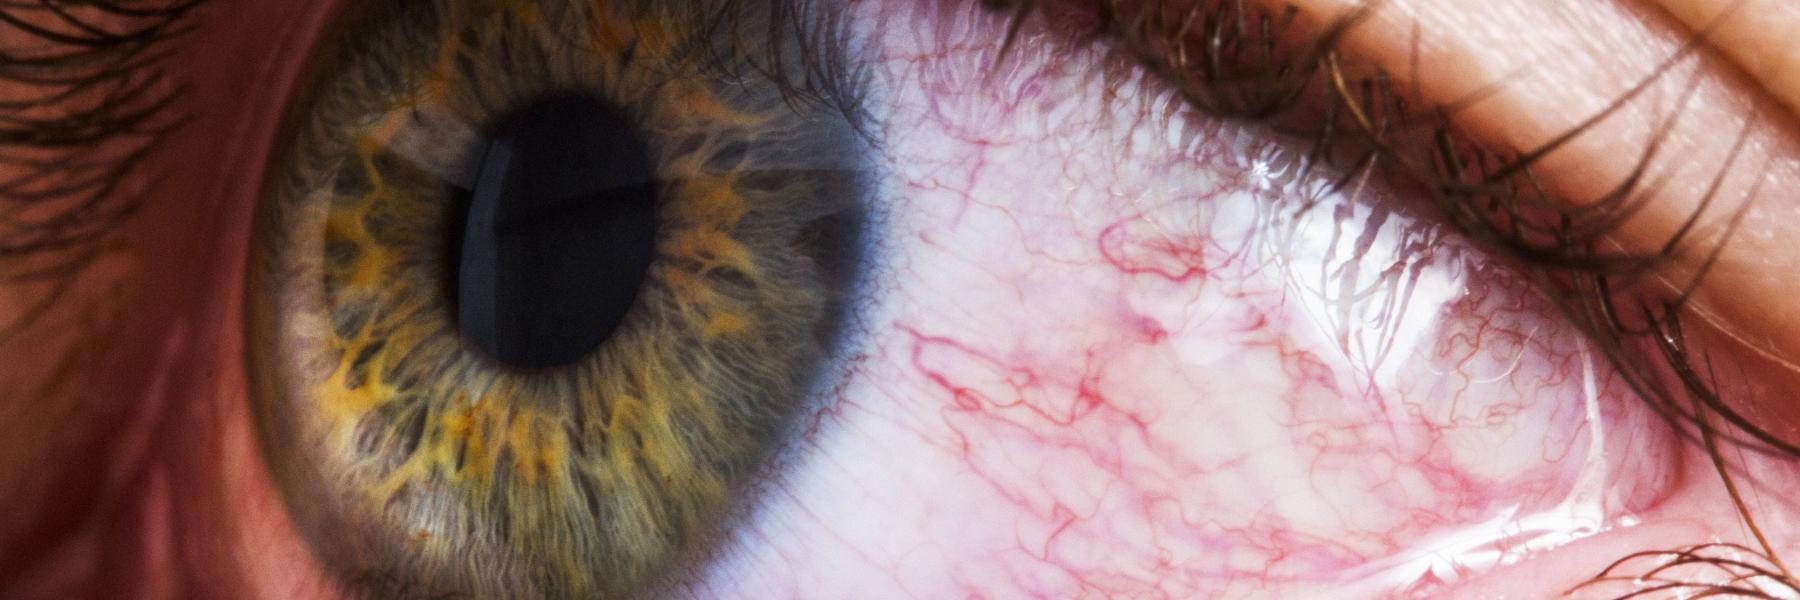  نصائح بسيطة لتخفيف التهابات العين الوردية.. تعرف عليها